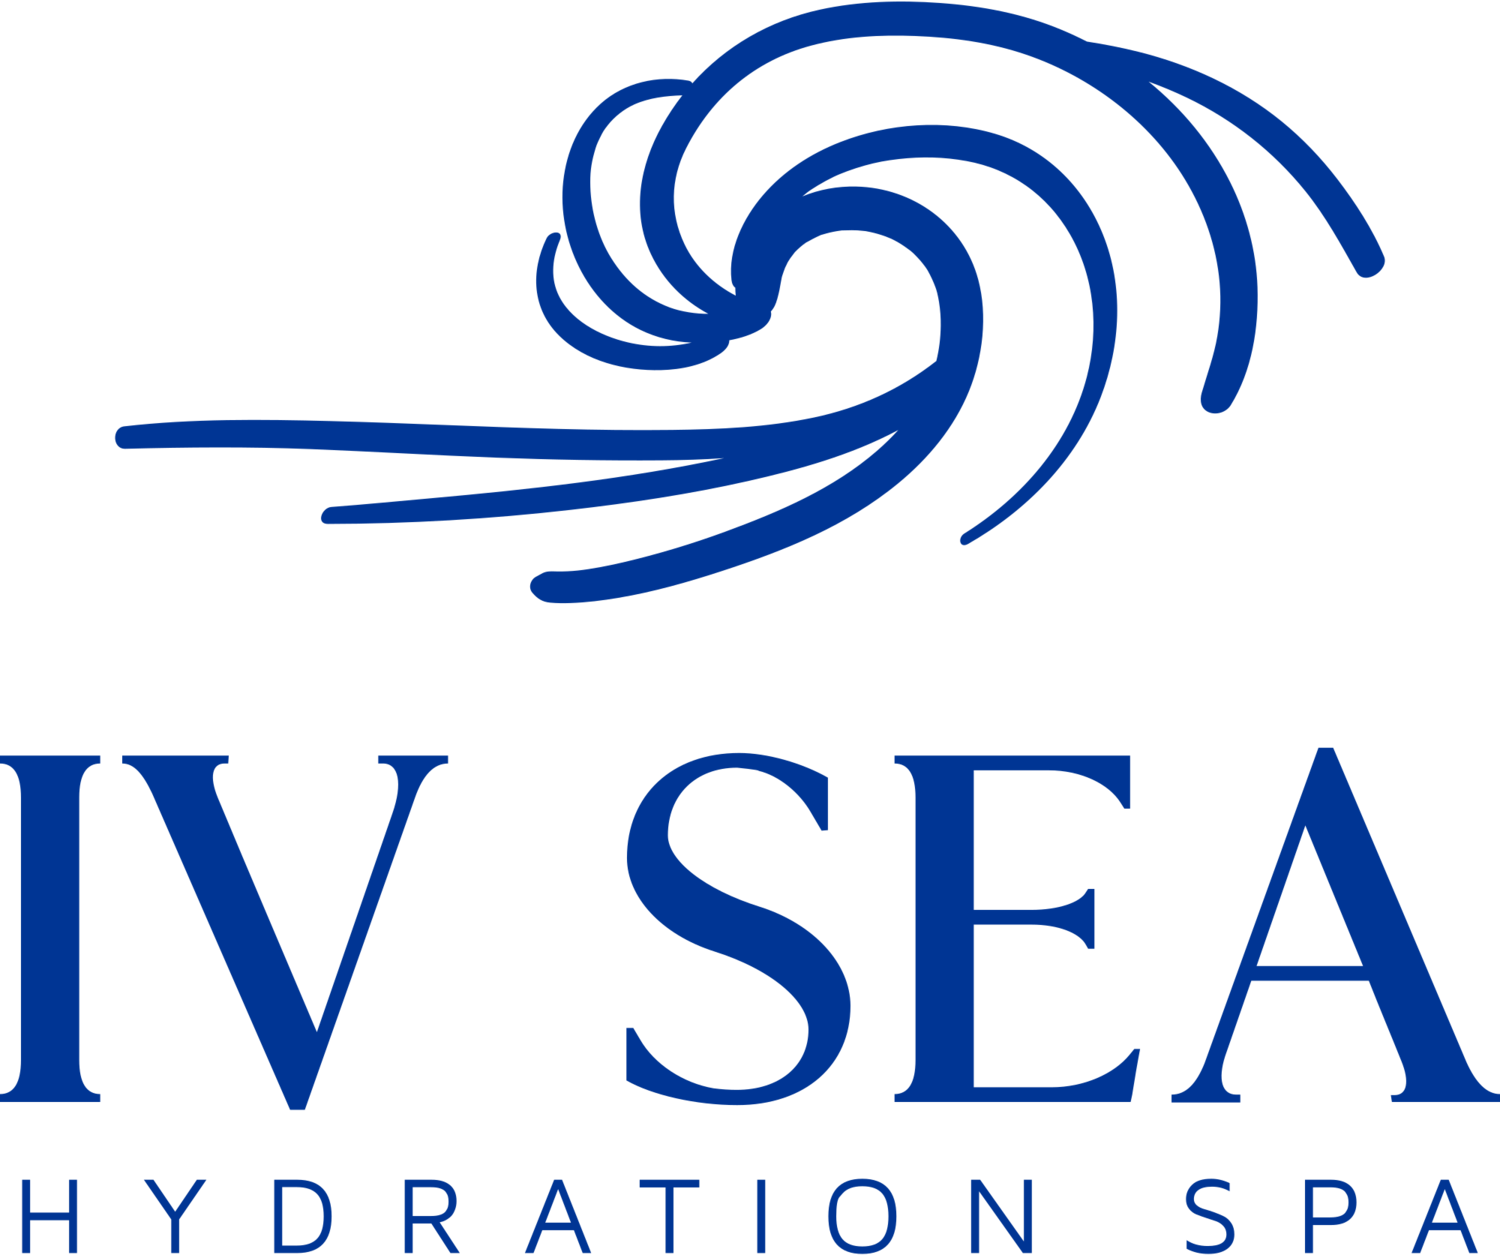 IV Sea Hydration Spa